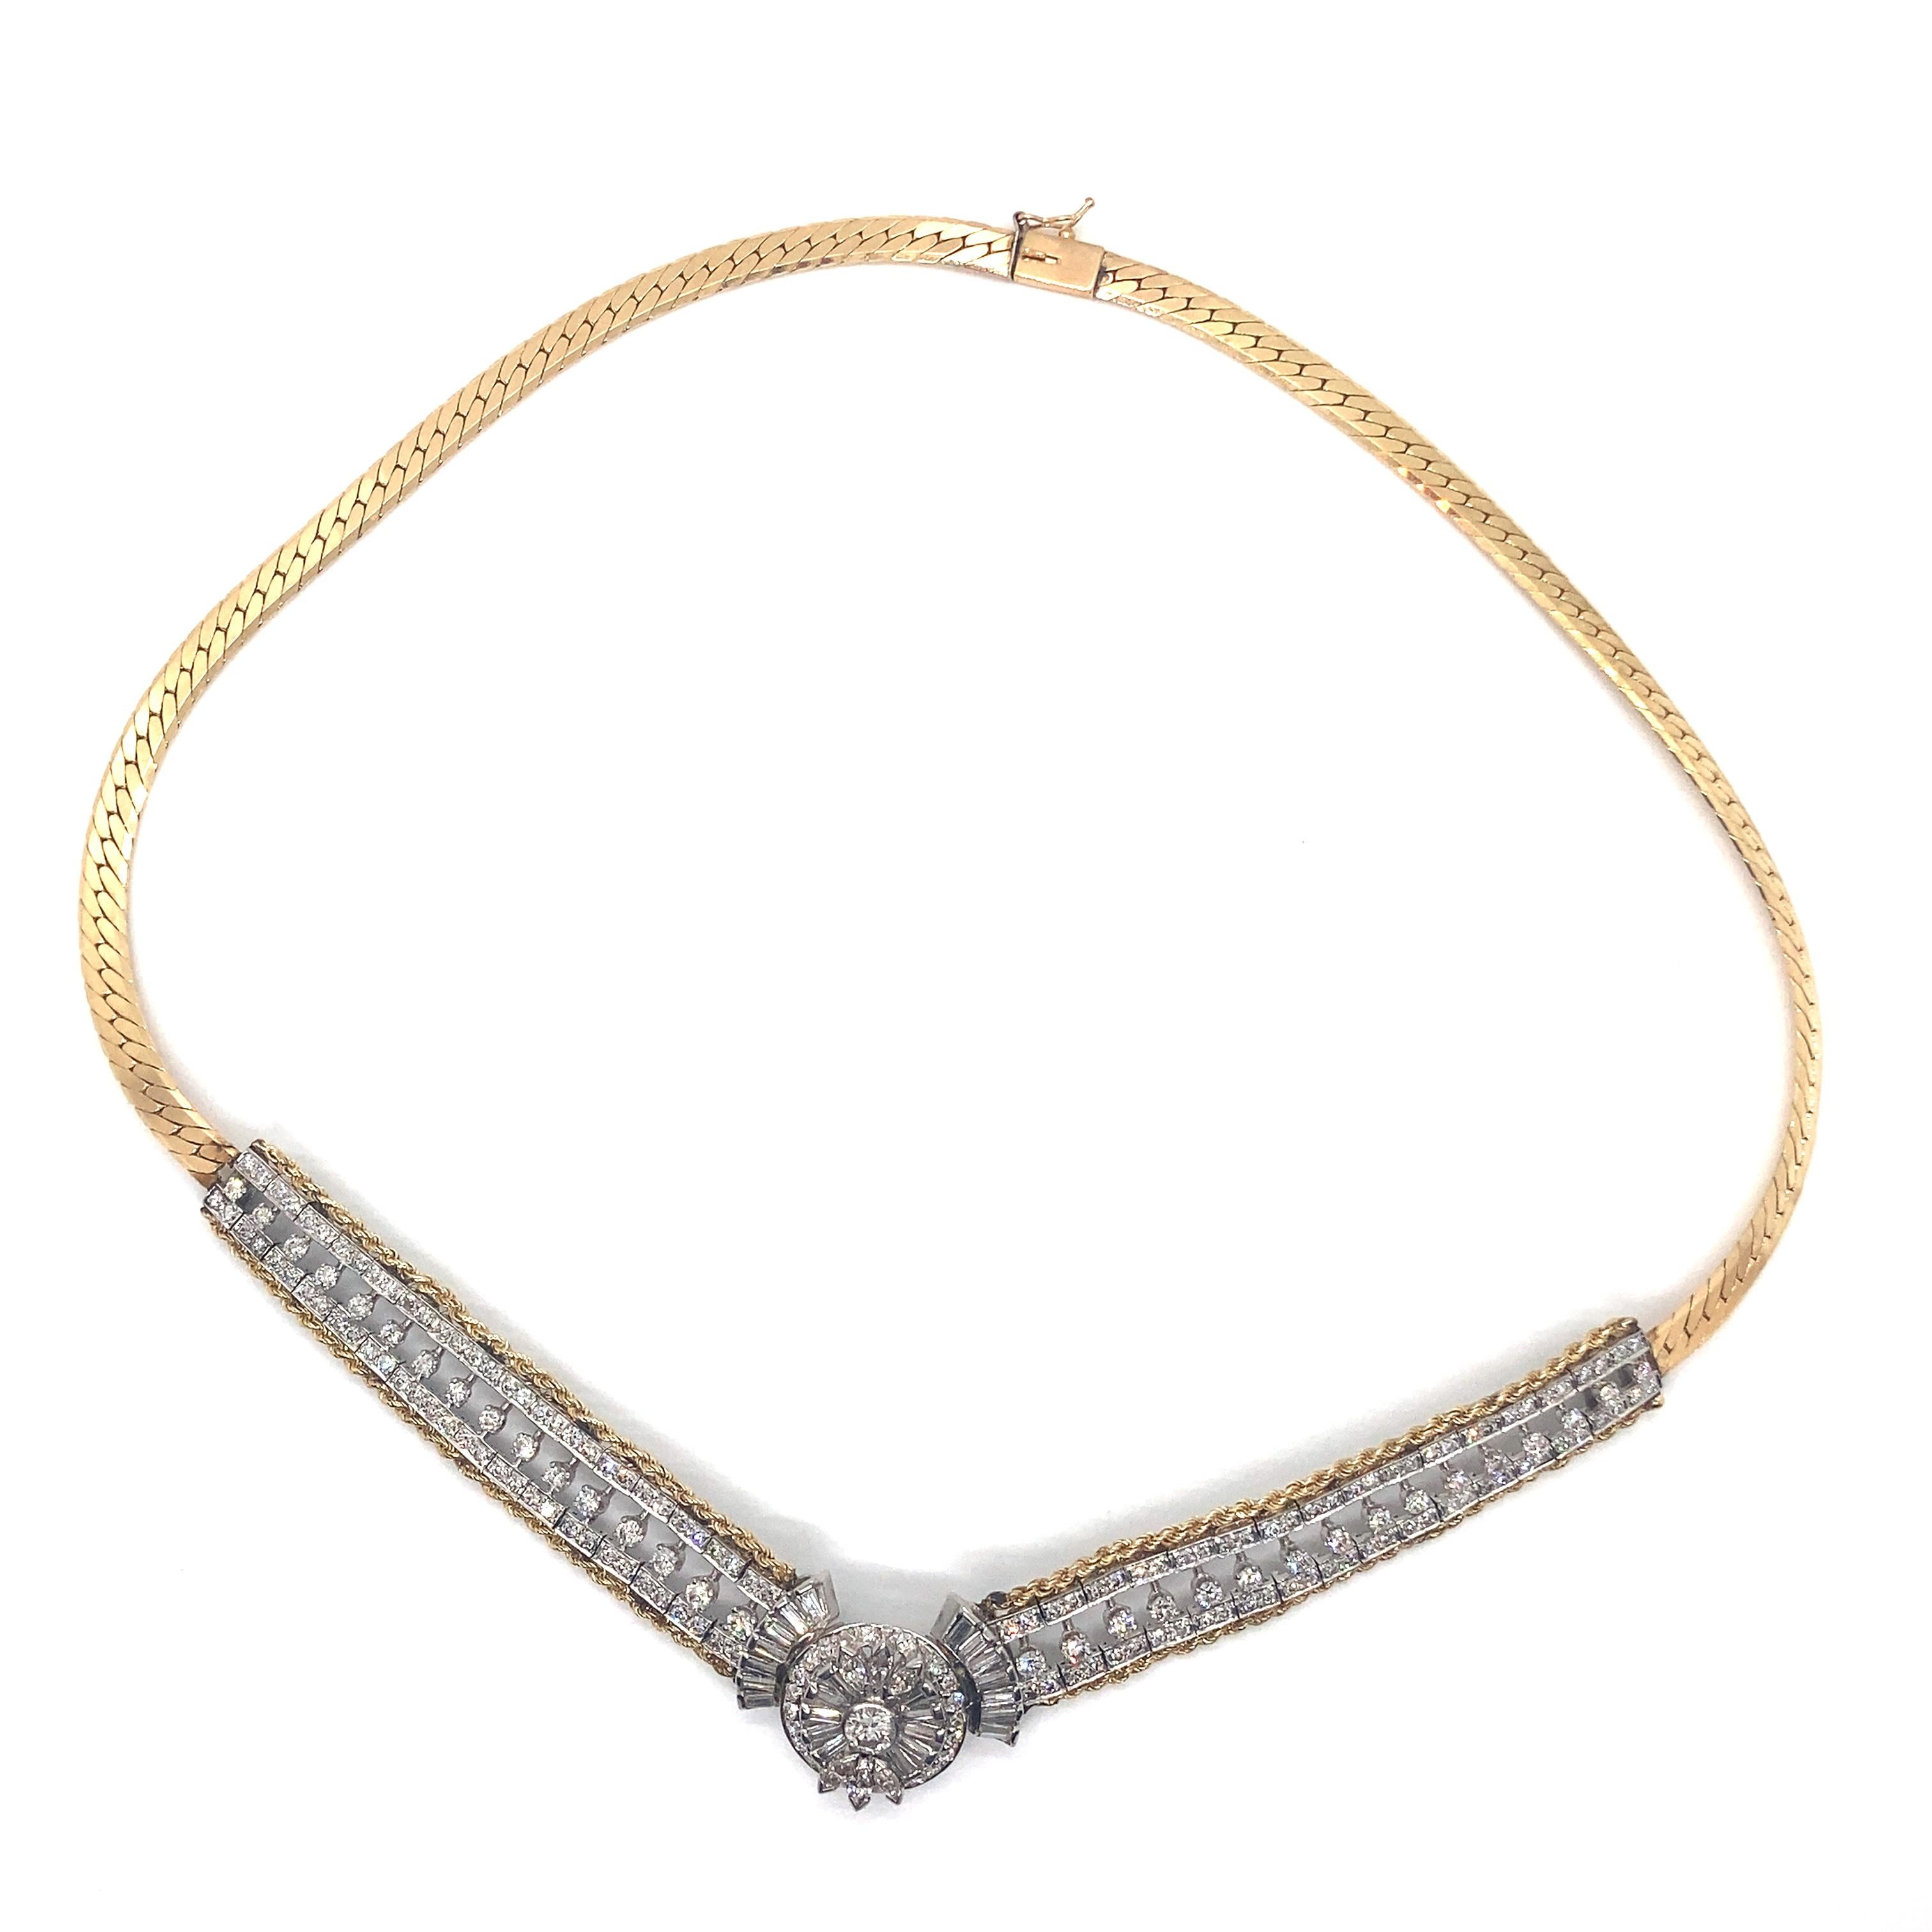 Vintage By 1990's Chunky Statement Necklace With Diamonds - Die Halskette enthält 181 runde Diamanten mit einem Gesamtgewicht von ca. 4,80ct, 6 Marquises mit einem Gesamtgewicht von ca. .50ct und 24 gerade Baguette-Diamanten mit einem Gesamtgewicht